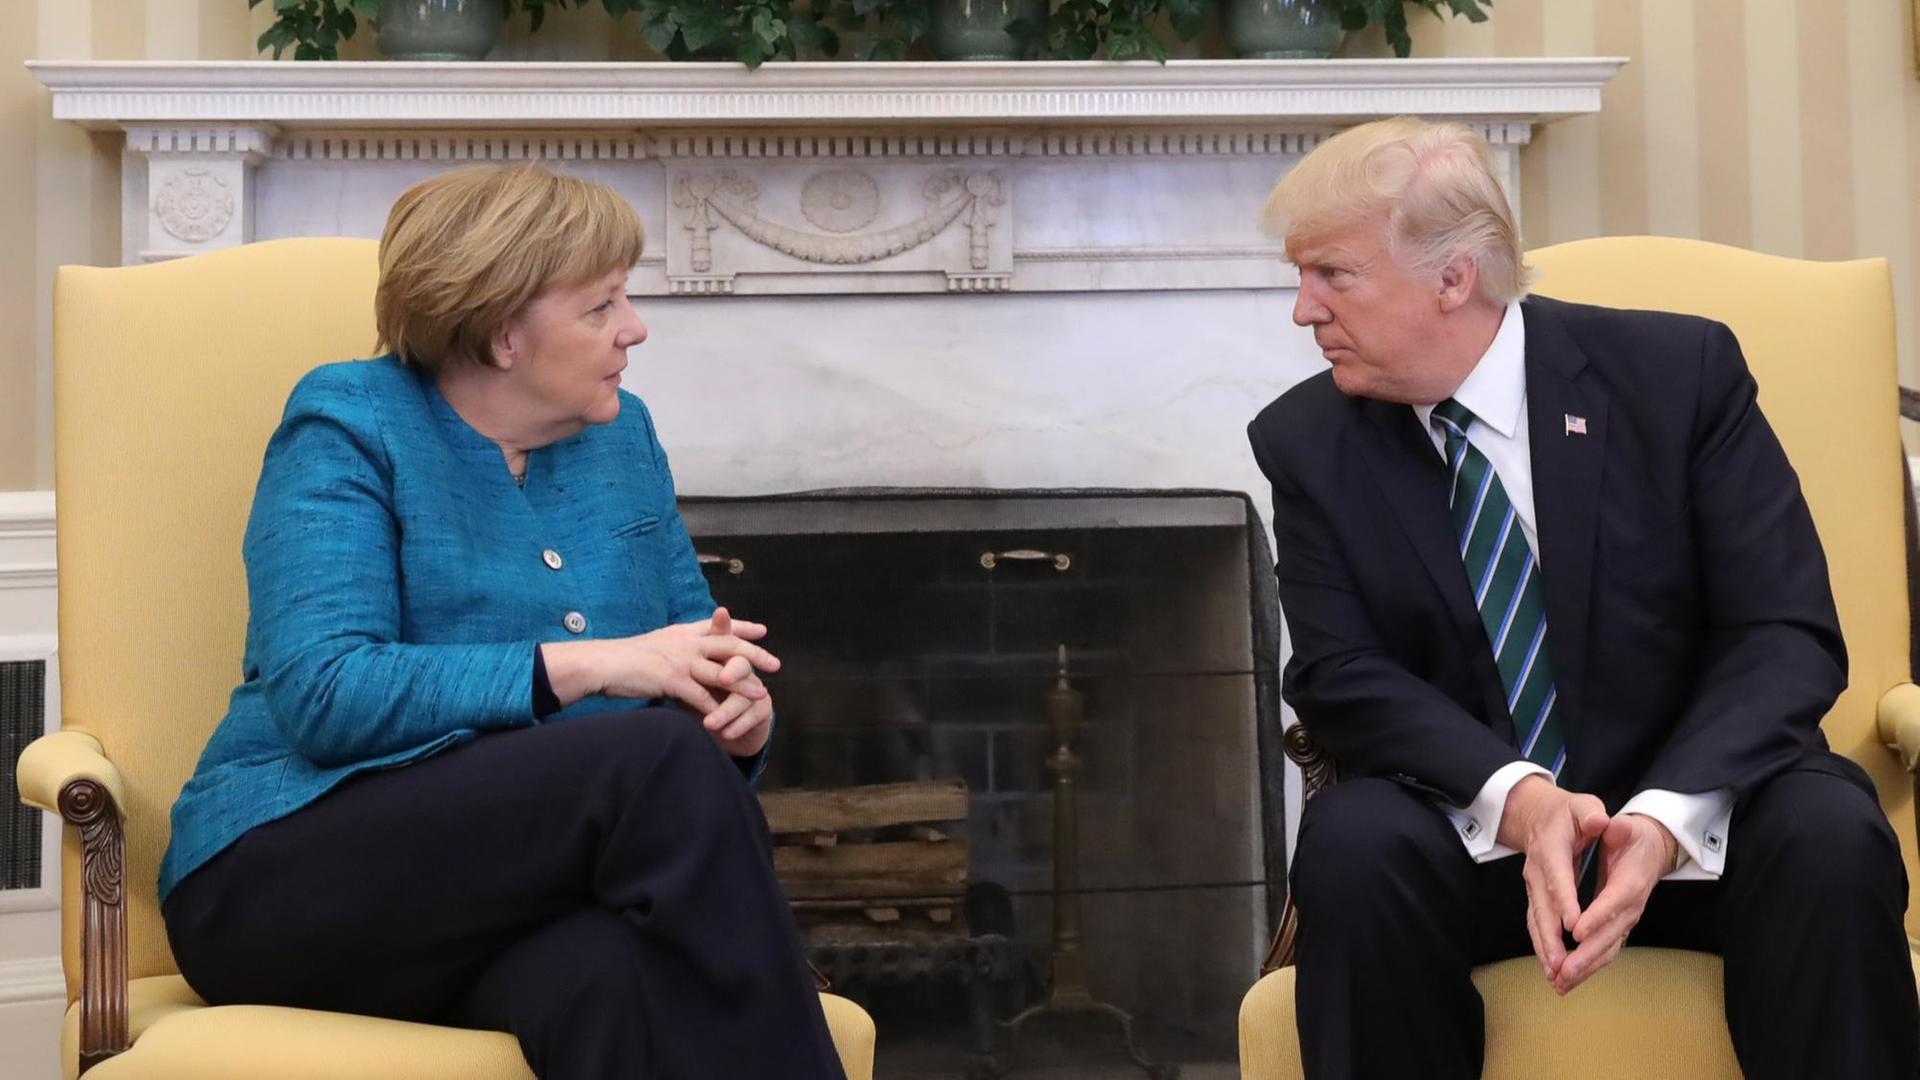 Sie sehen die Bundes-Kanzlerin und den Präsidenten von dem Land USA. Sie sitzen vor einem Kamin.